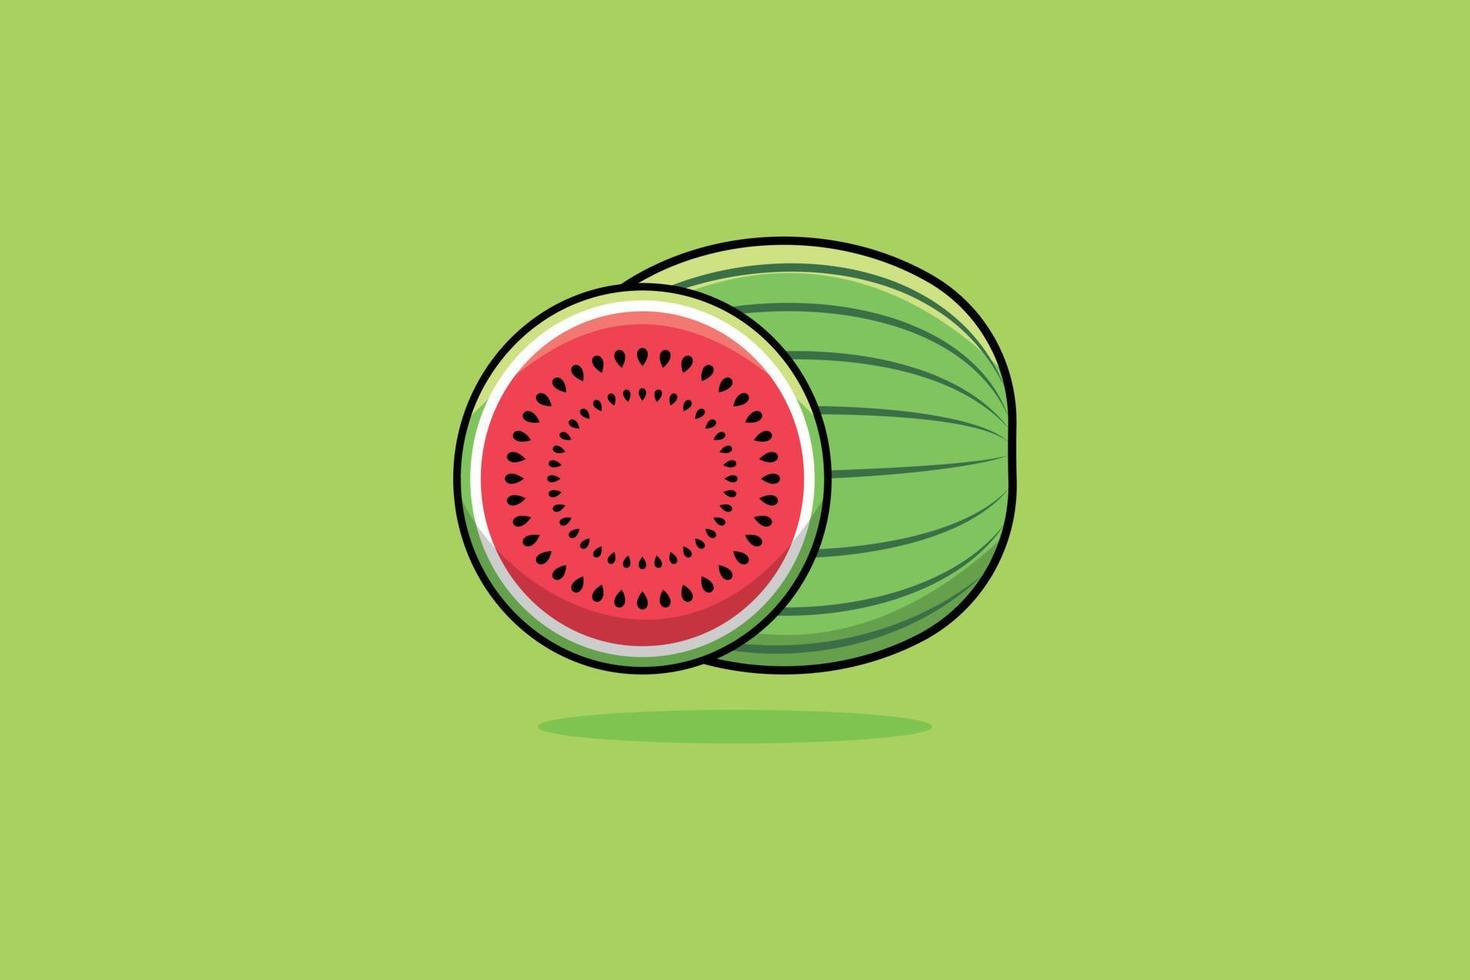 Wassermelonen-Frucht-Vektor-Symbol-Illustration. Wassermelone und Scheibe Wassermelone. Obst-Icon-Design-Konzept. frisches Obst, gesunde Ernährung, Gesundheitsschutz, natürliche Früchte, Körperfrische, Bio-Lebensmittel. vektor